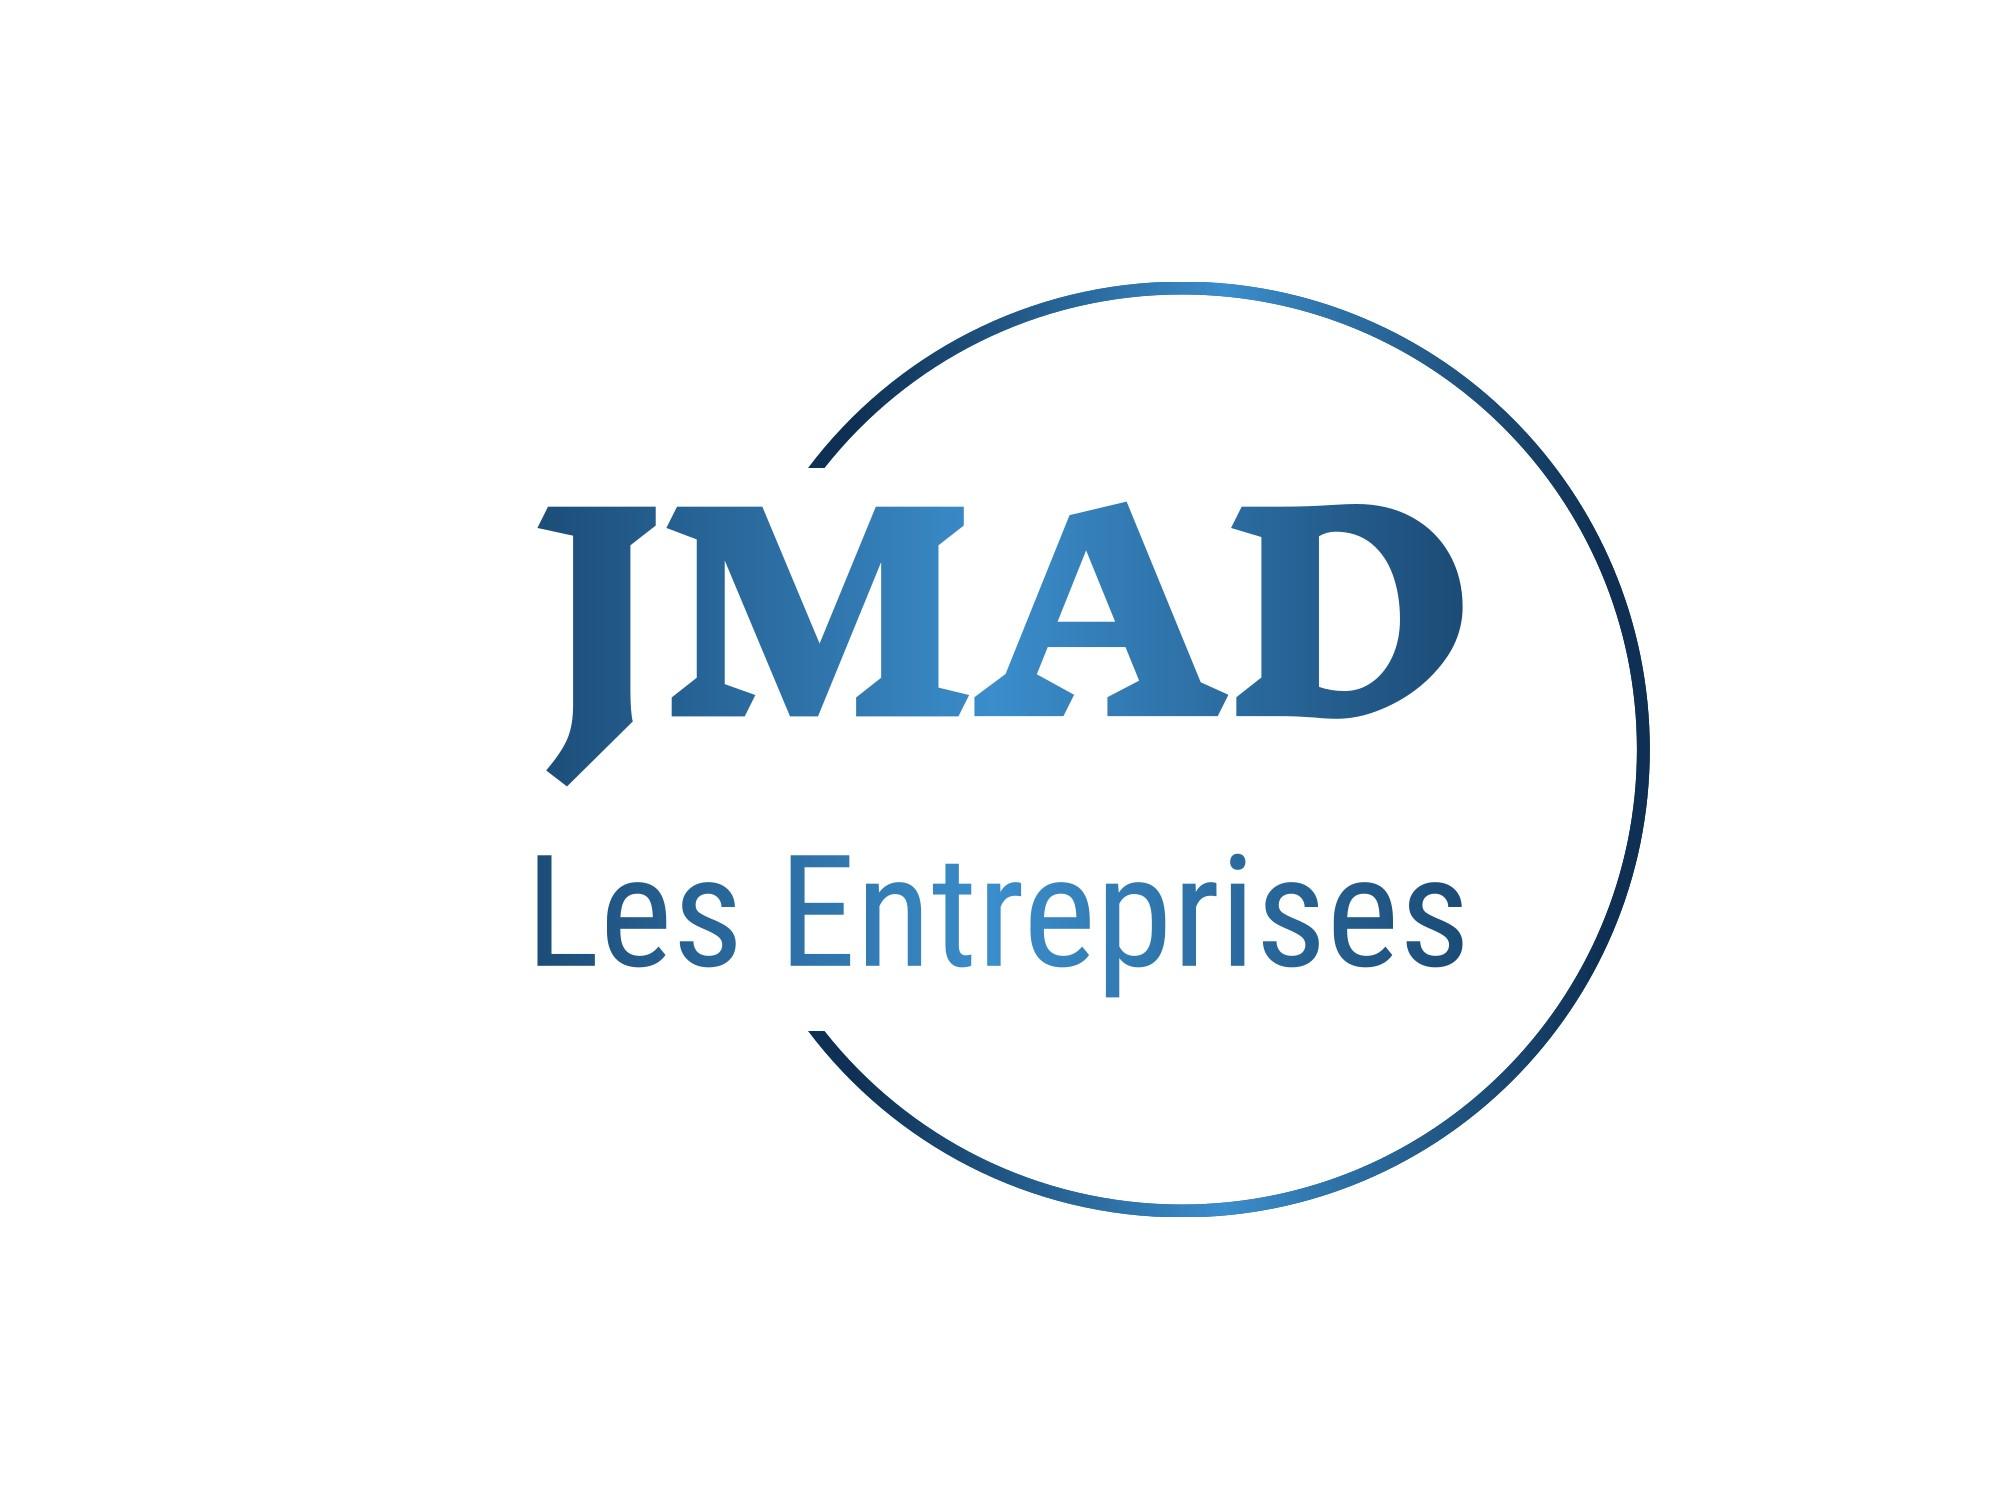 Les Entreprises JMAD